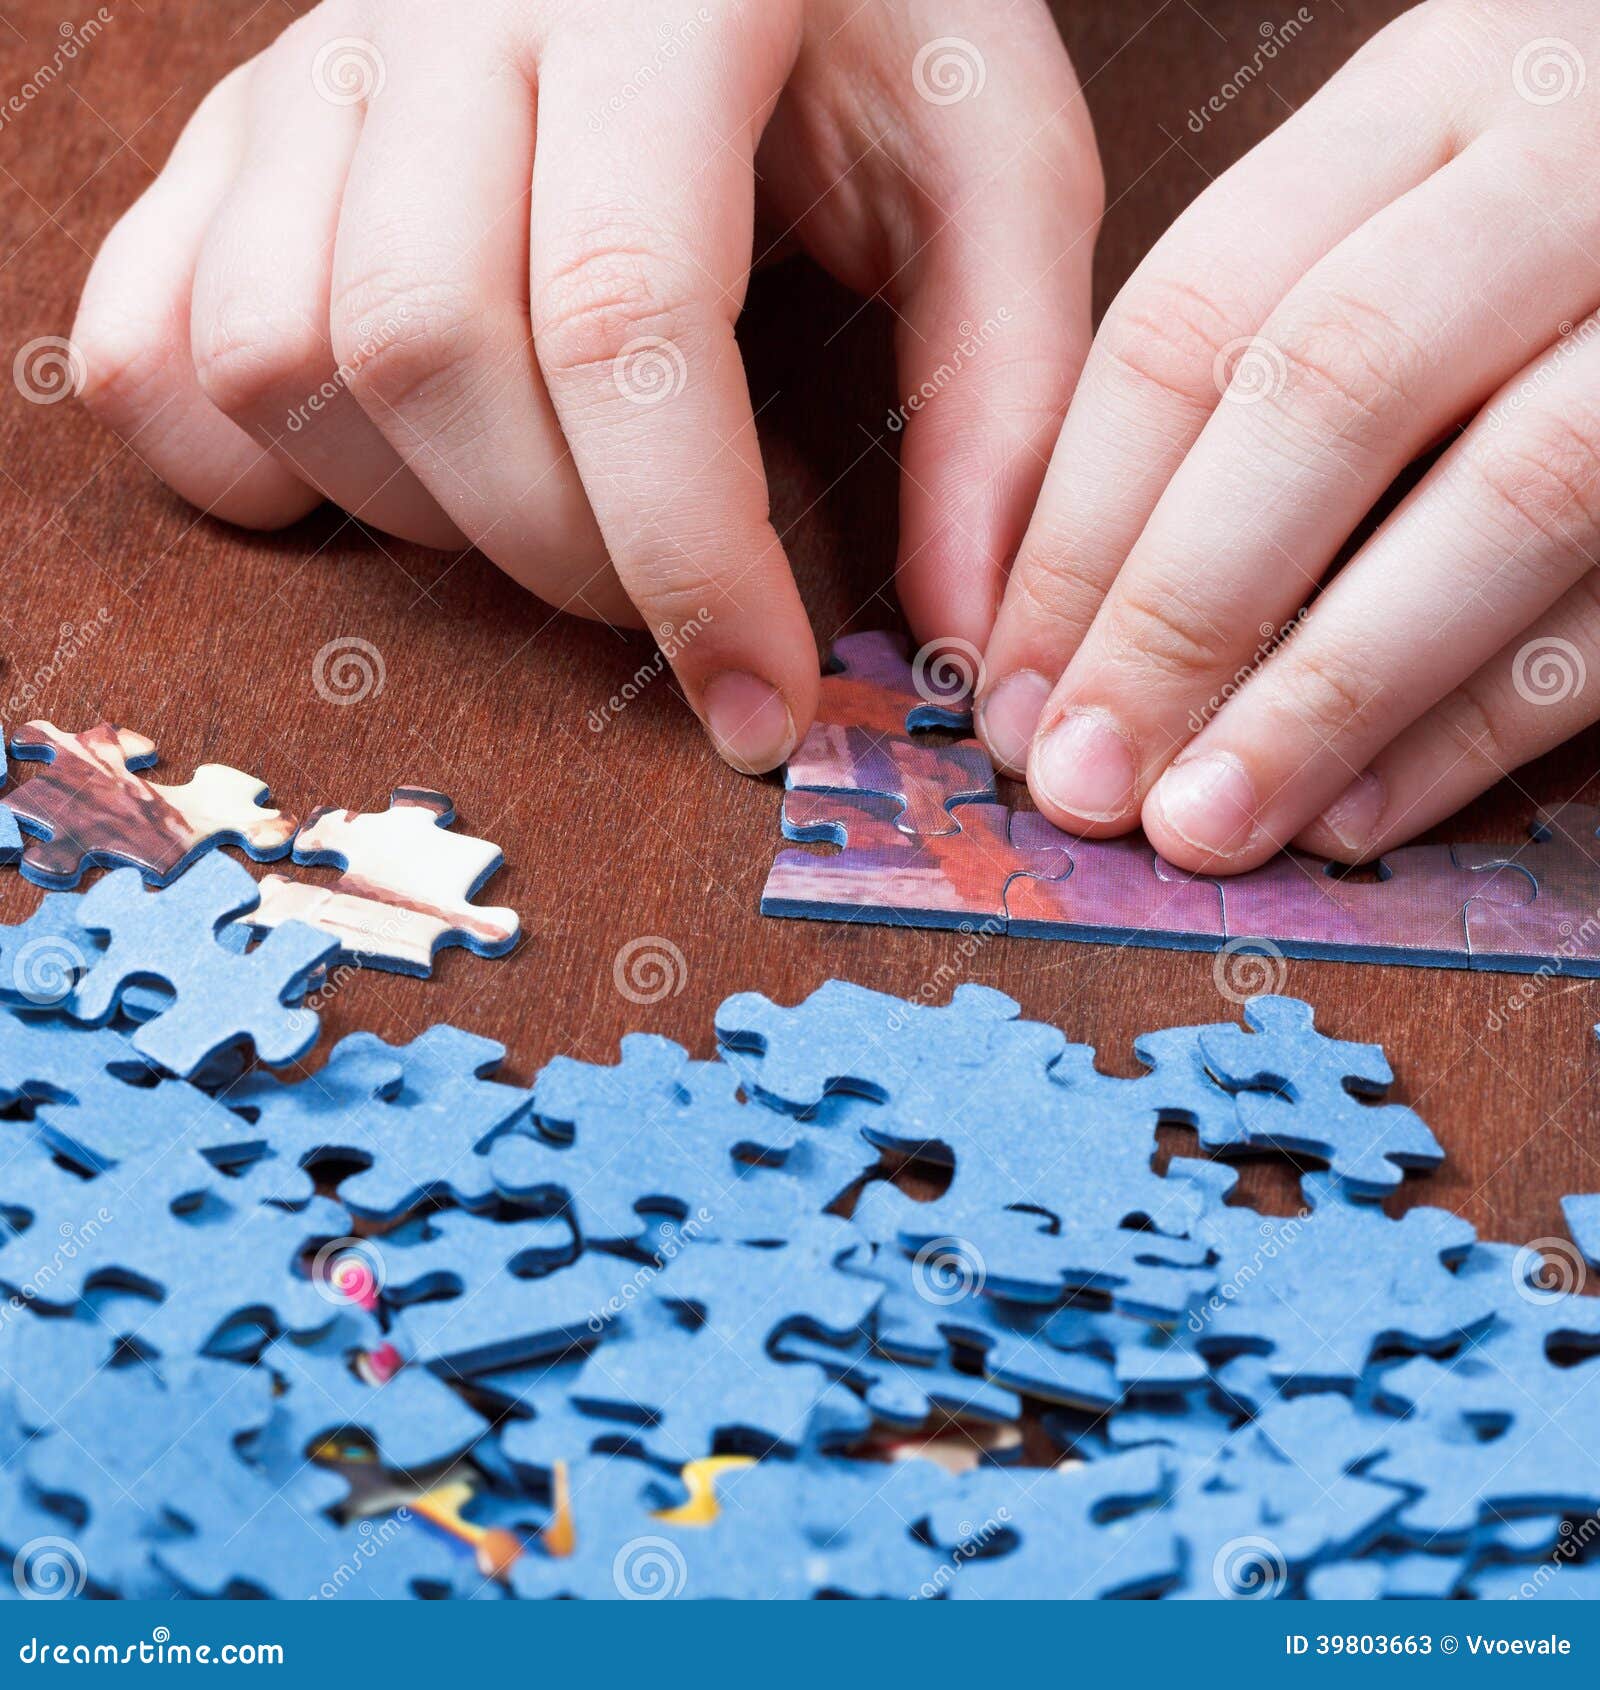 Het spelen met puzzels afbeelding. Image wapen - 39803663